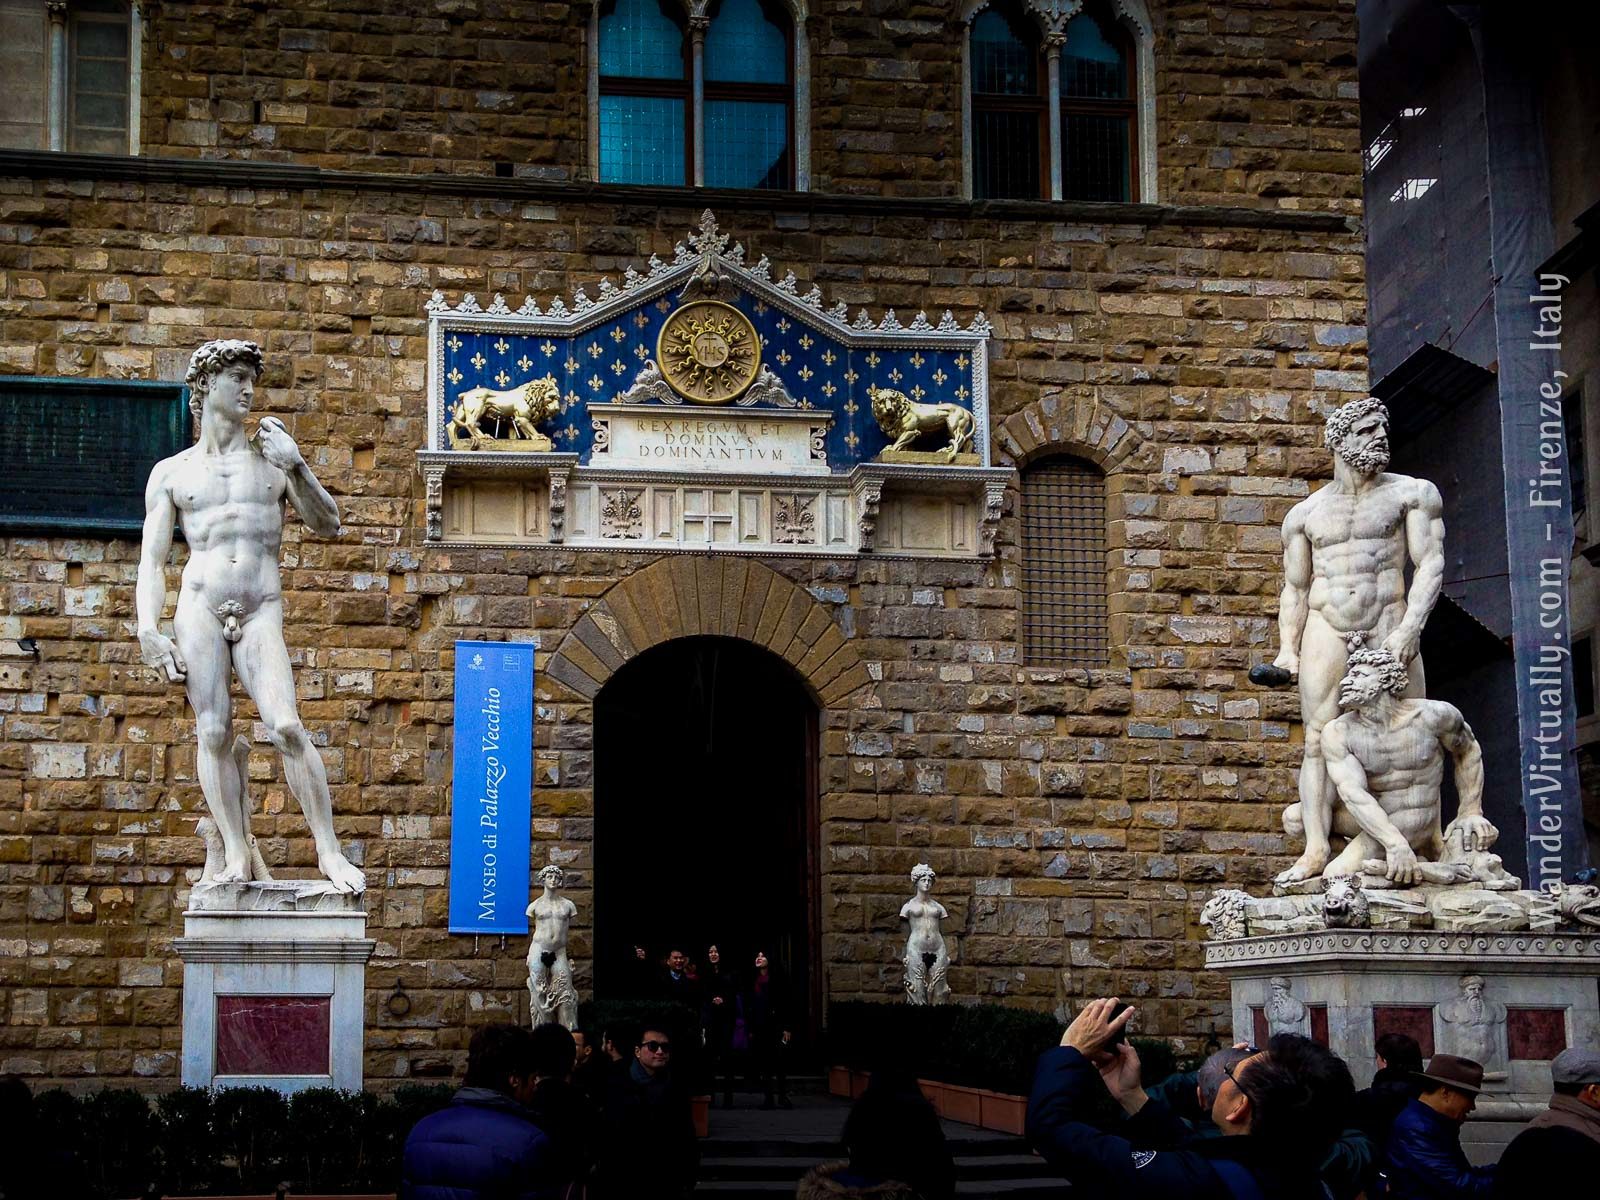 David and Hercules at the Palazzo Vecchio. Piazza della Signoria - Florence, Italy.